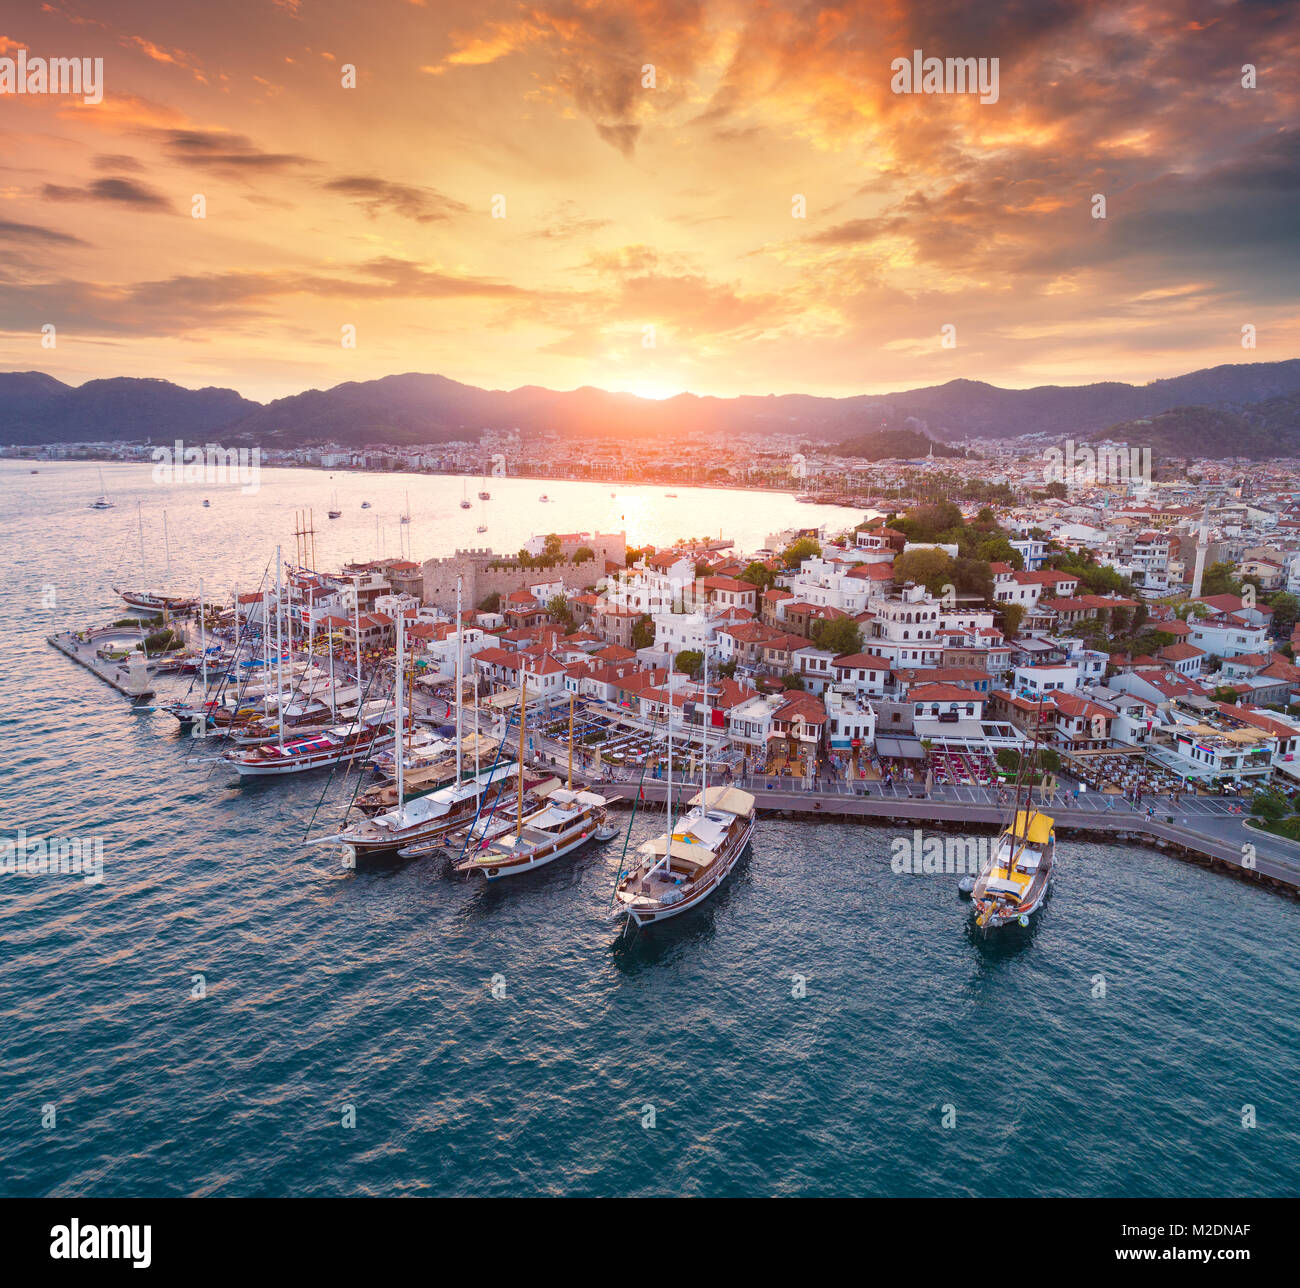 Vista aerea di barche e yacht e la bella architettura al tramonto a Marmaris, Turchia. Paesaggio con barche in marina bay, mare, città, montagne, co Foto Stock